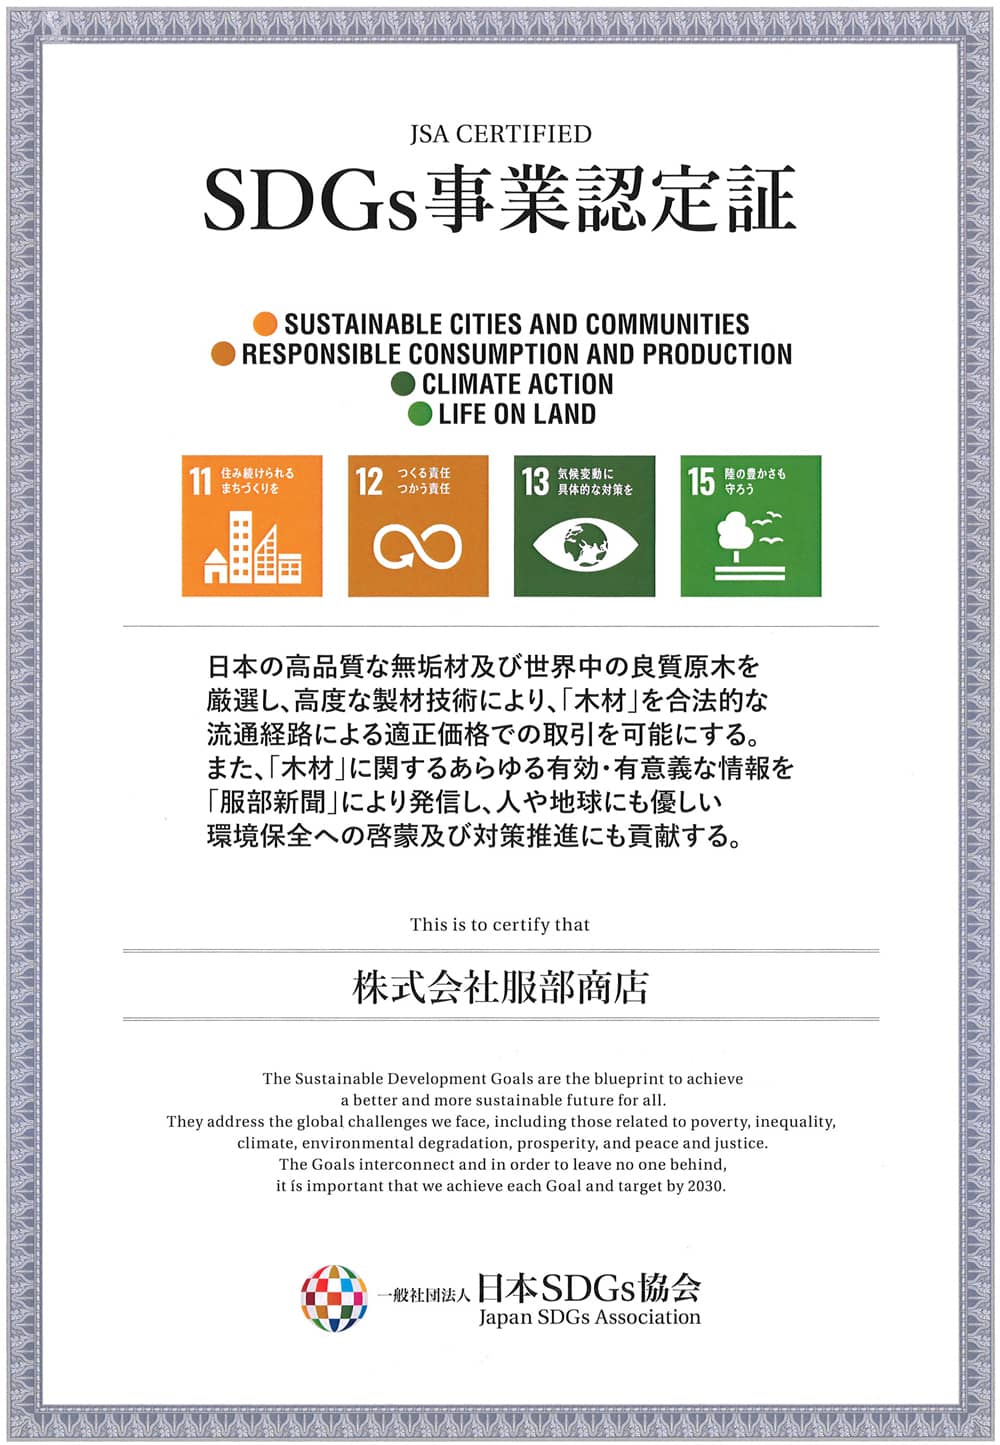 一般社団法人 日本SDGs協会の認定企業「株式会社服部商店」